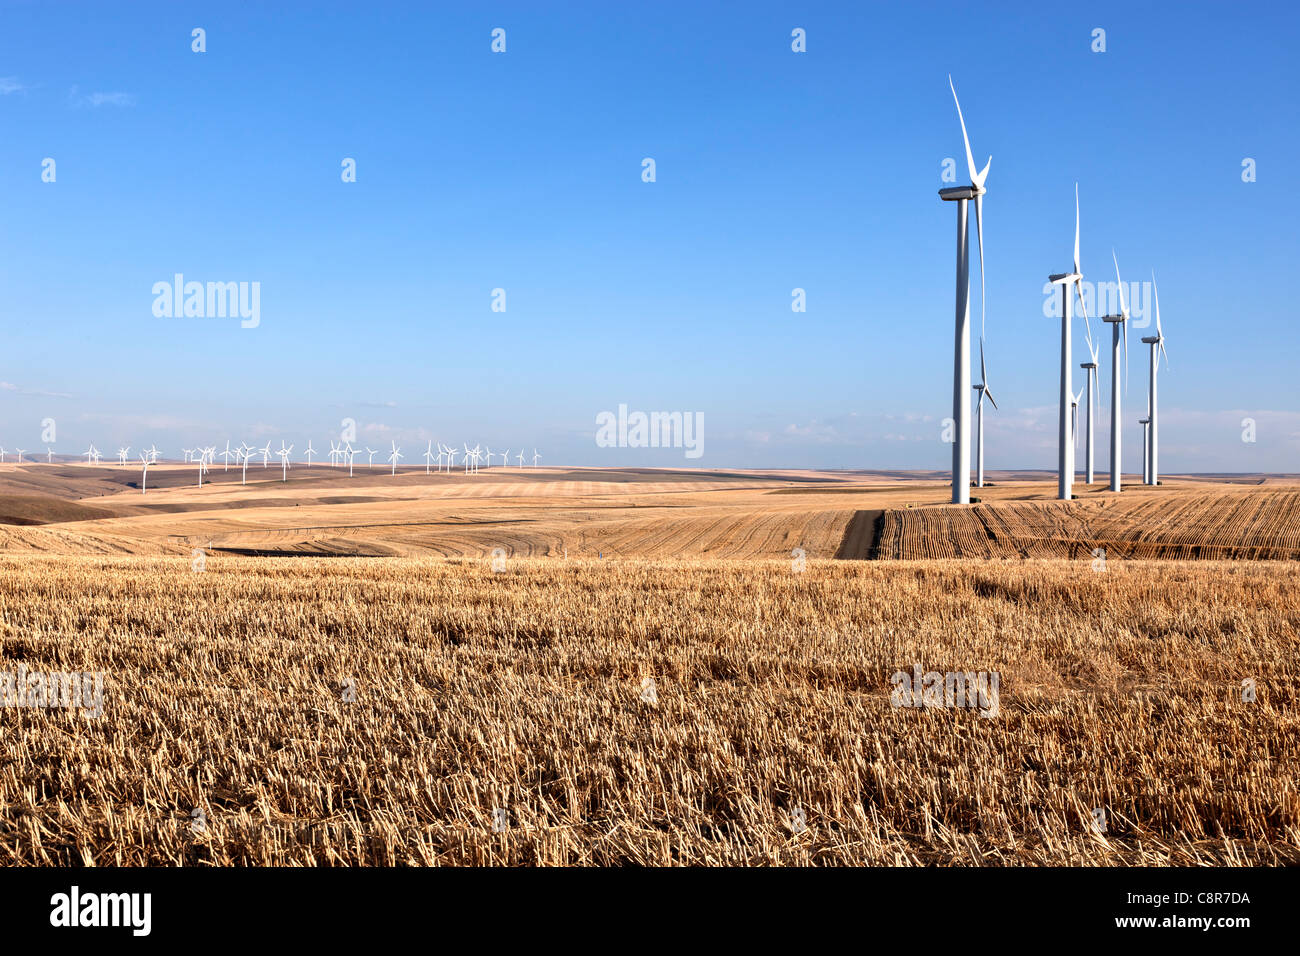 Wind farm, turbines, wheat stubble. Stock Photo